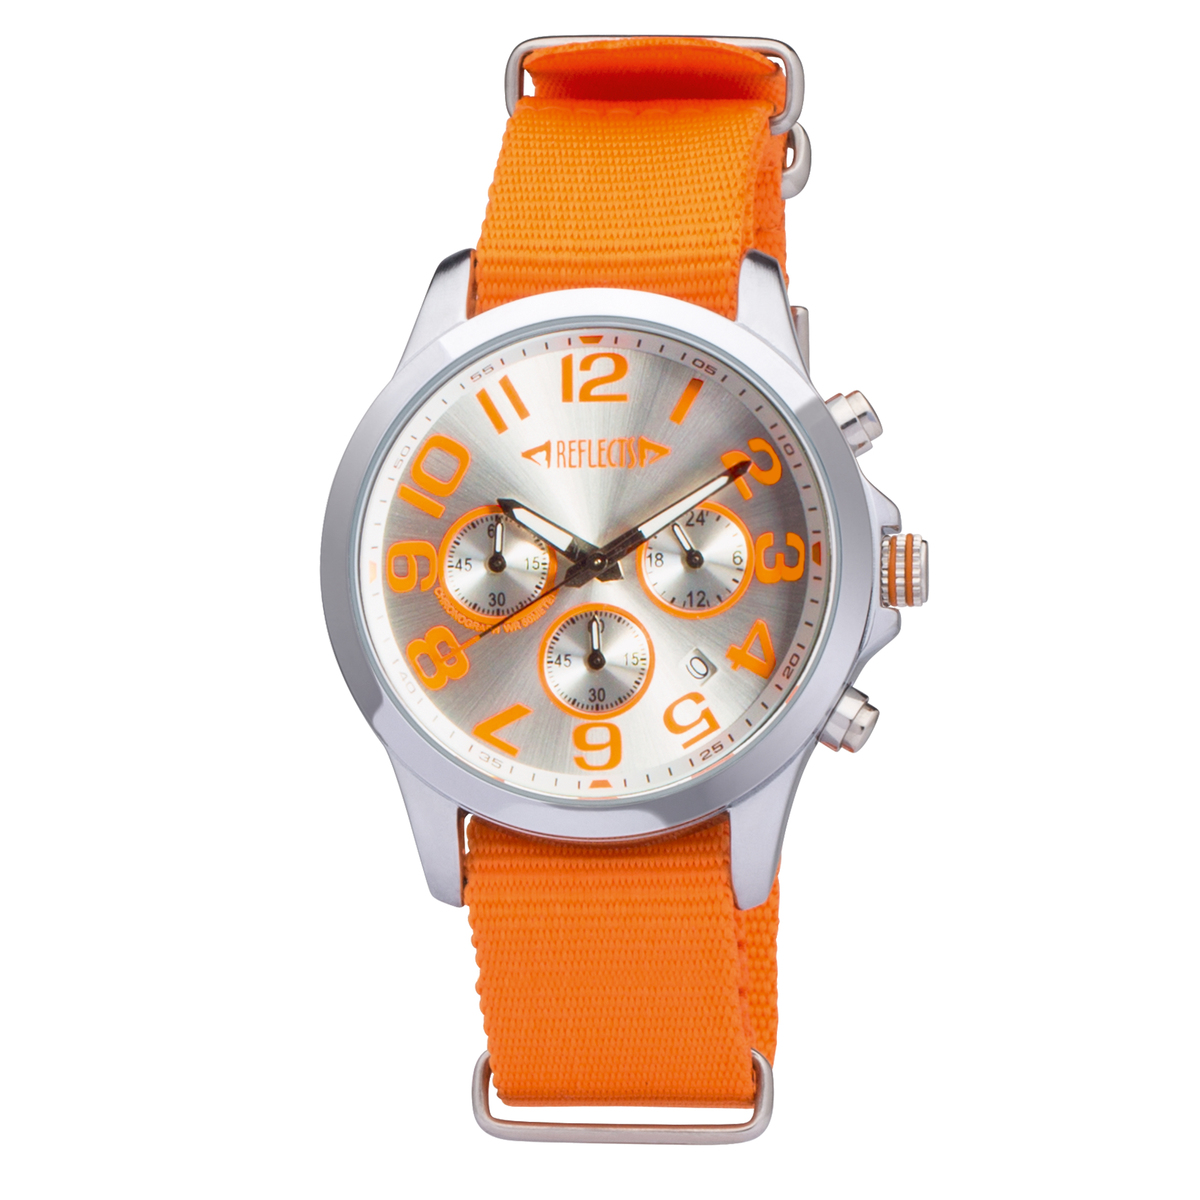 LM Armbanduhr REFLECTS-CHRONO ORANGE orange